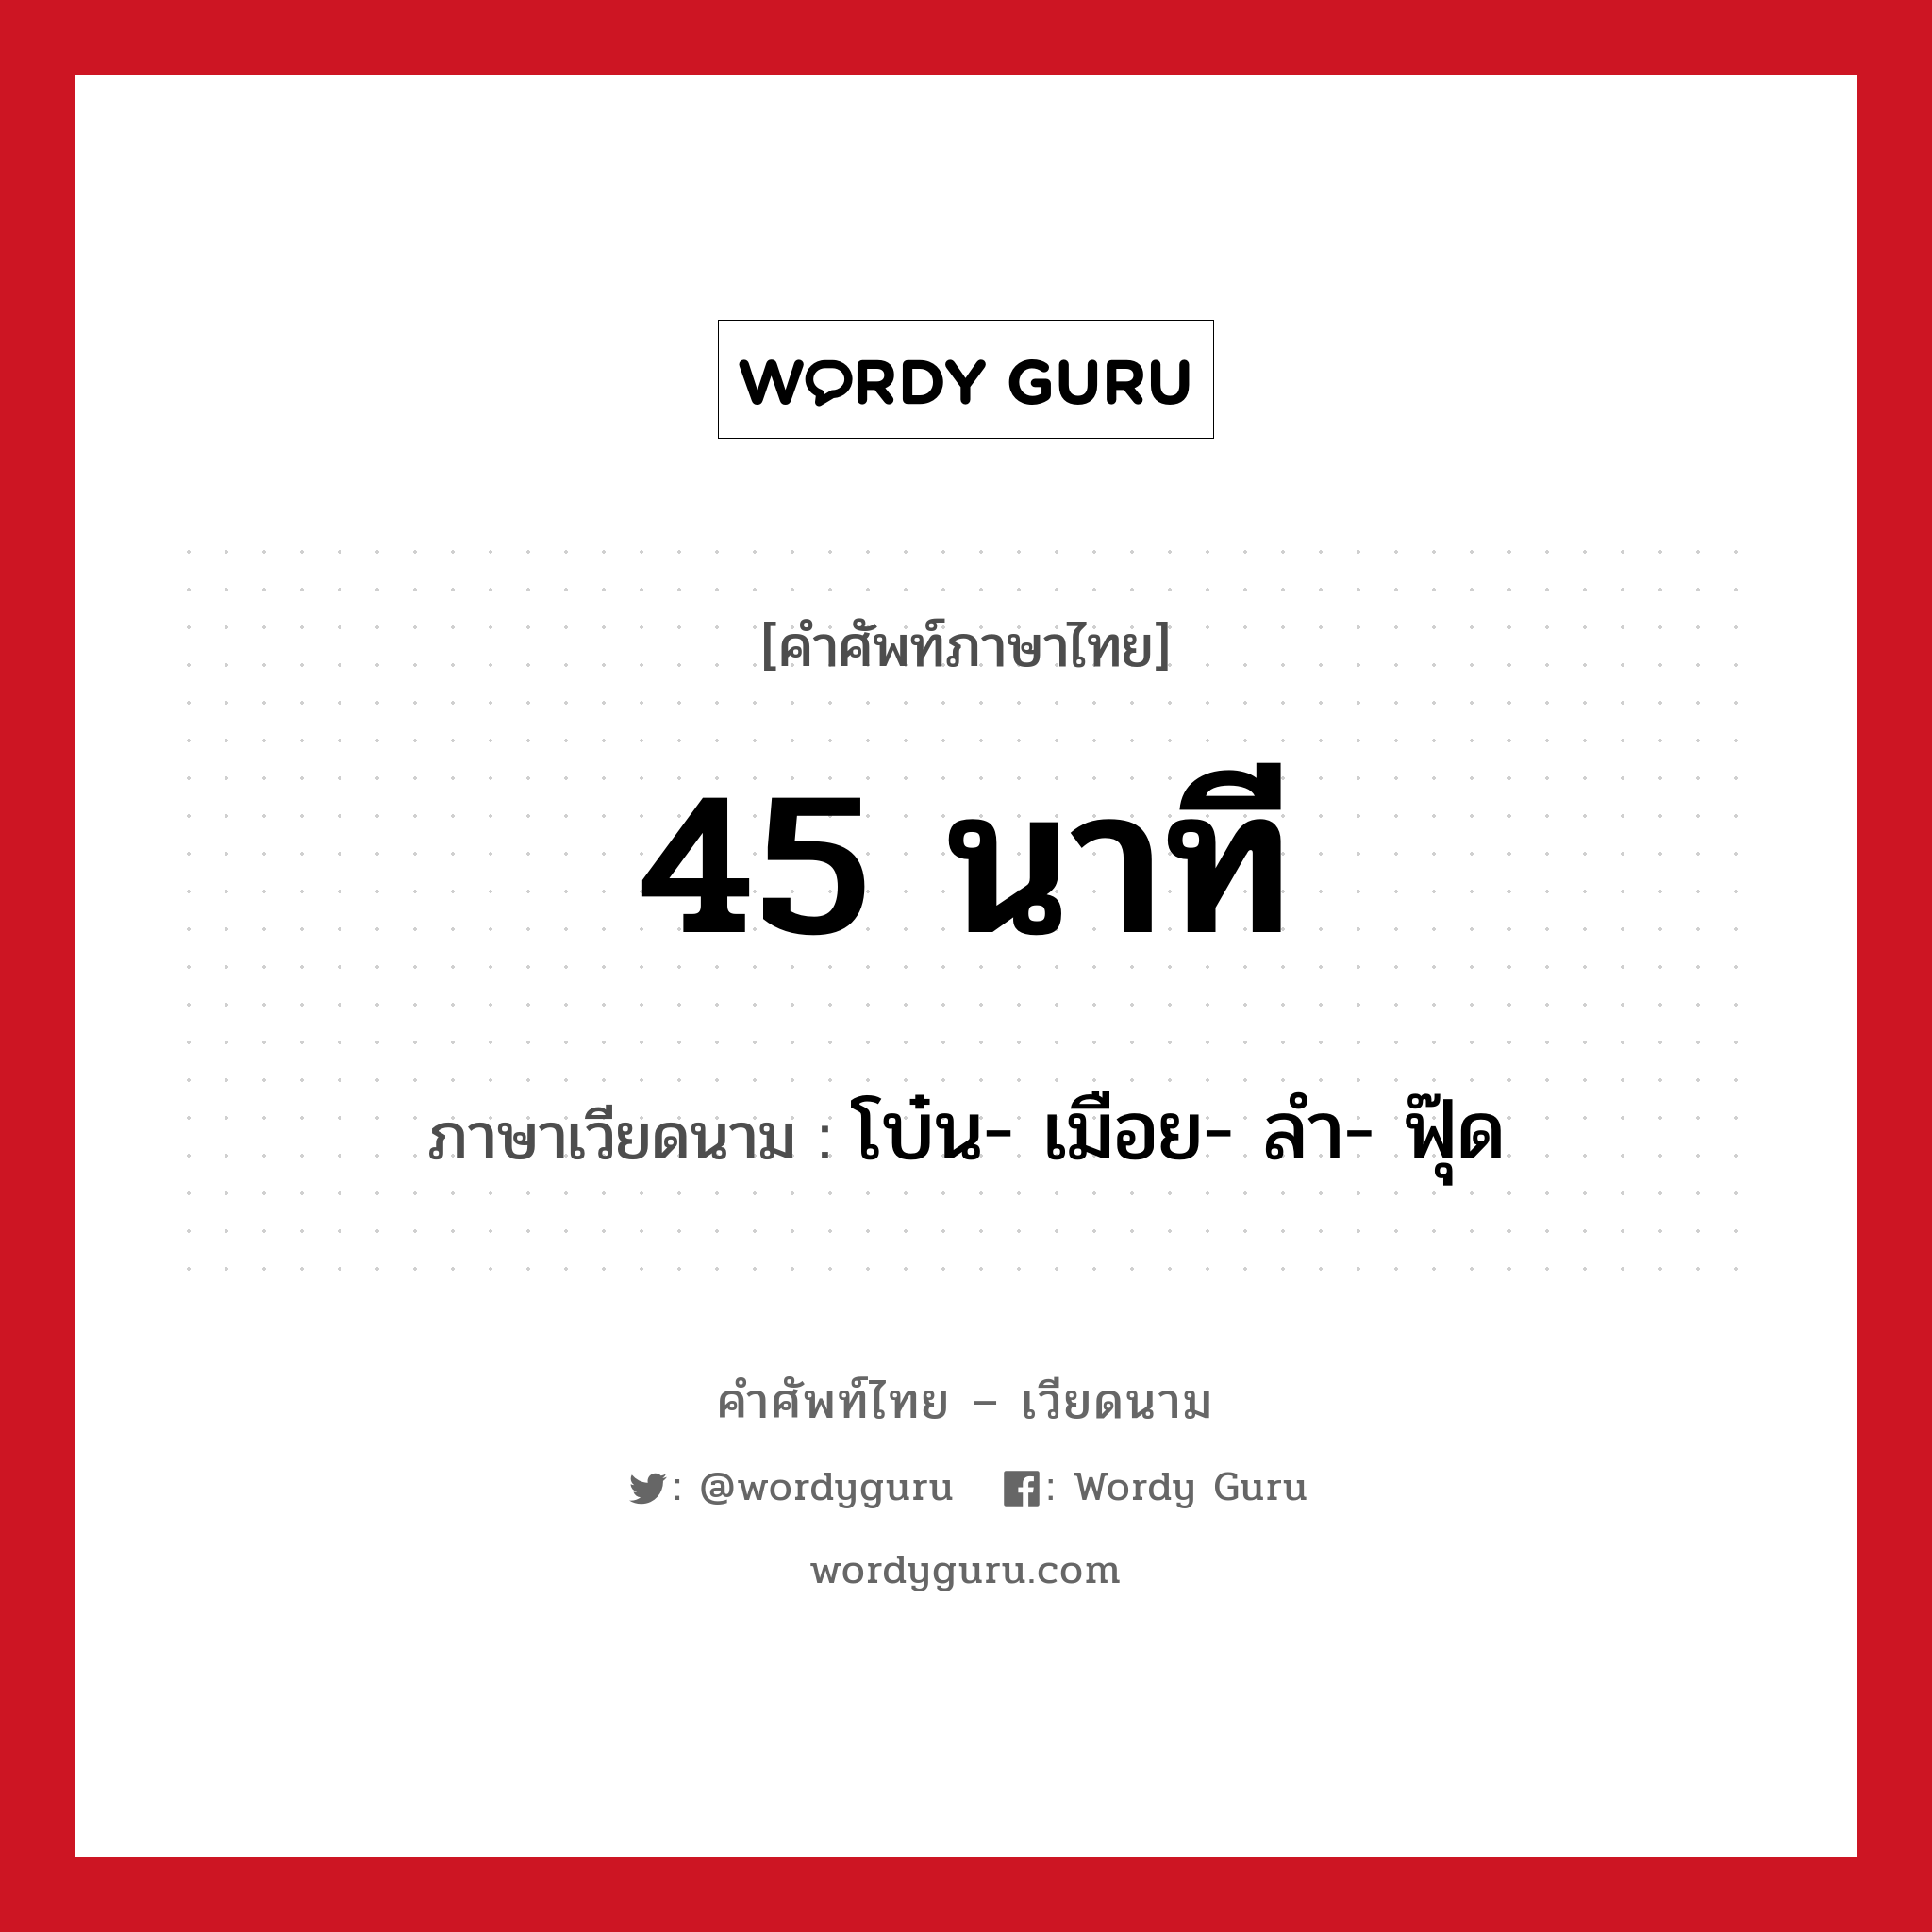 โบ๋น- เมือย- ลำ- ฟุ๊ด ภาษาไทย?, คำศัพท์ภาษาไทย - เวียดนาม โบ๋น- เมือย- ลำ- ฟุ๊ด ภาษาเวียดนาม 45 นาที หมวด การนับเลขและเวลา หมวด การนับเลขและเวลา